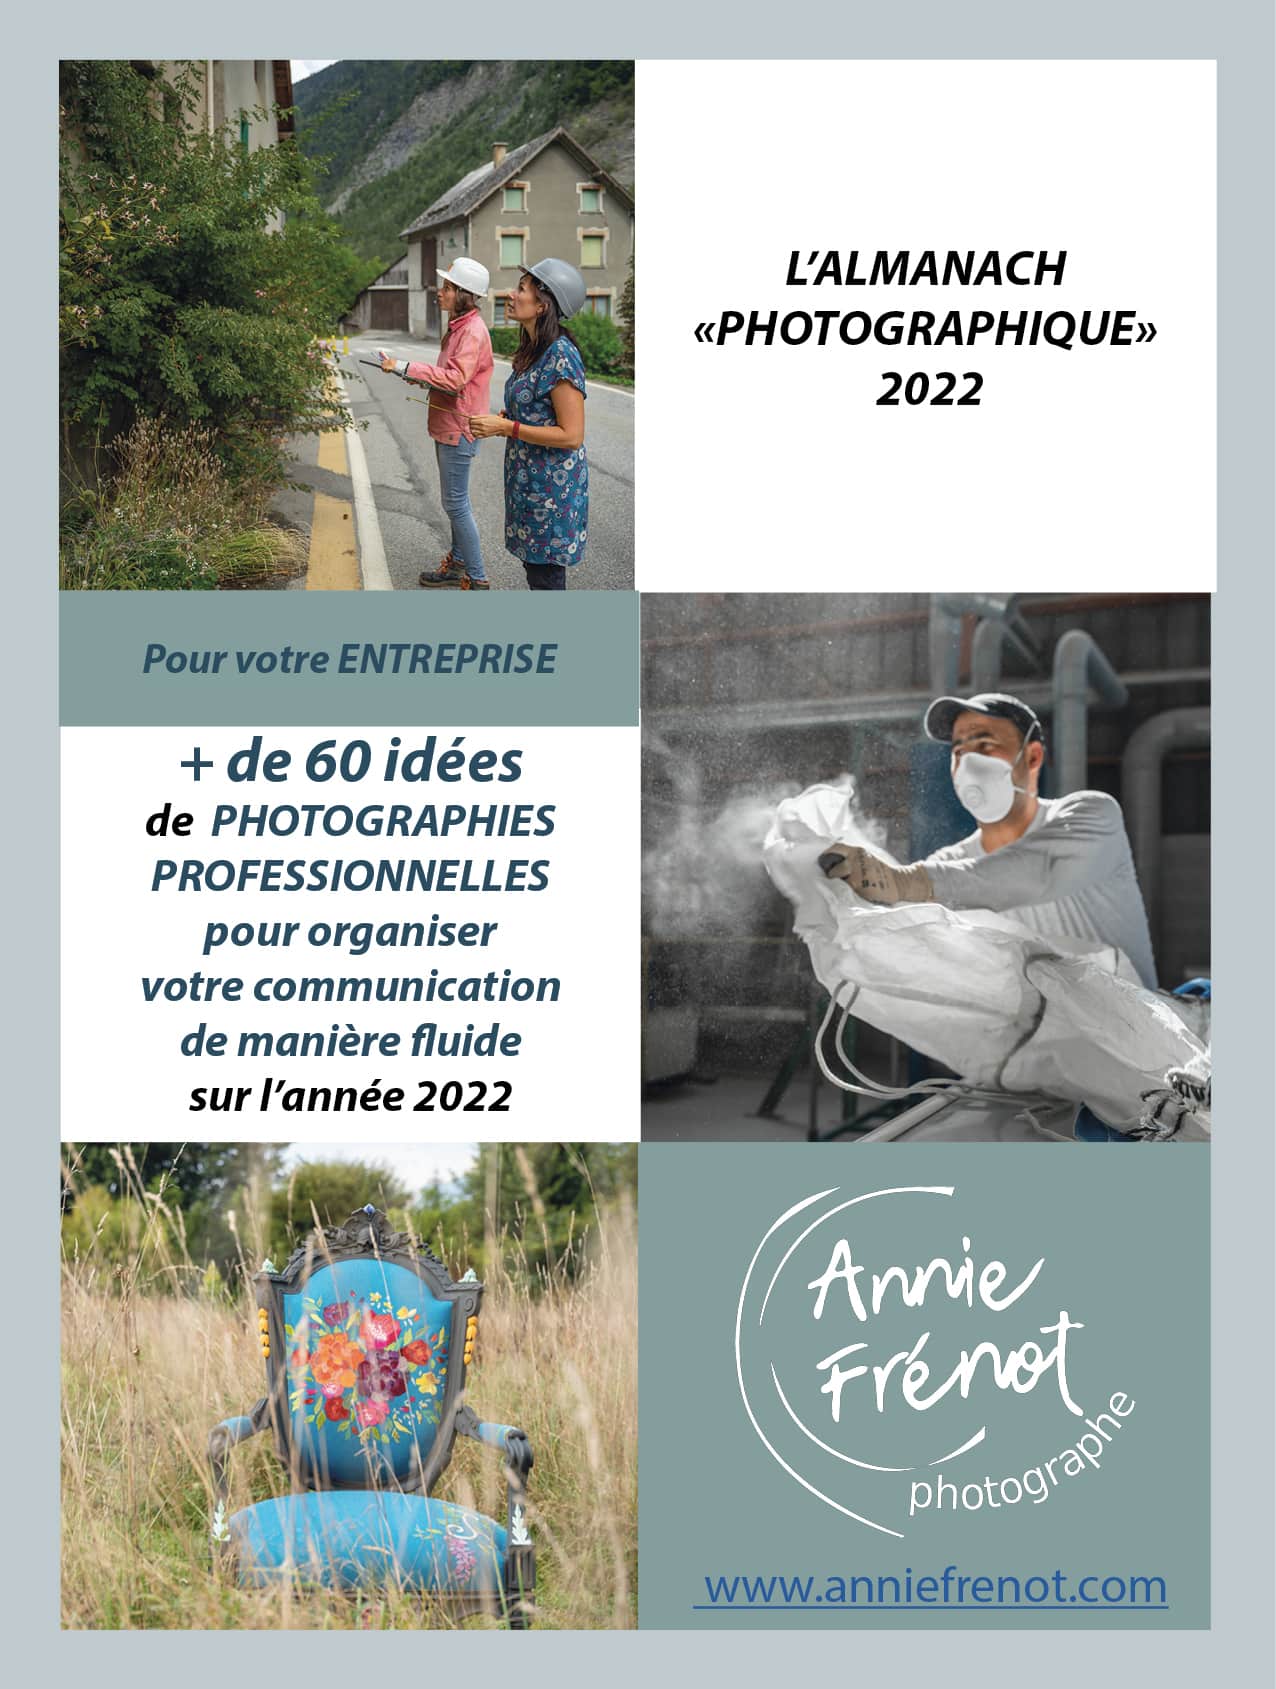 Almanach photo Annie Frenot